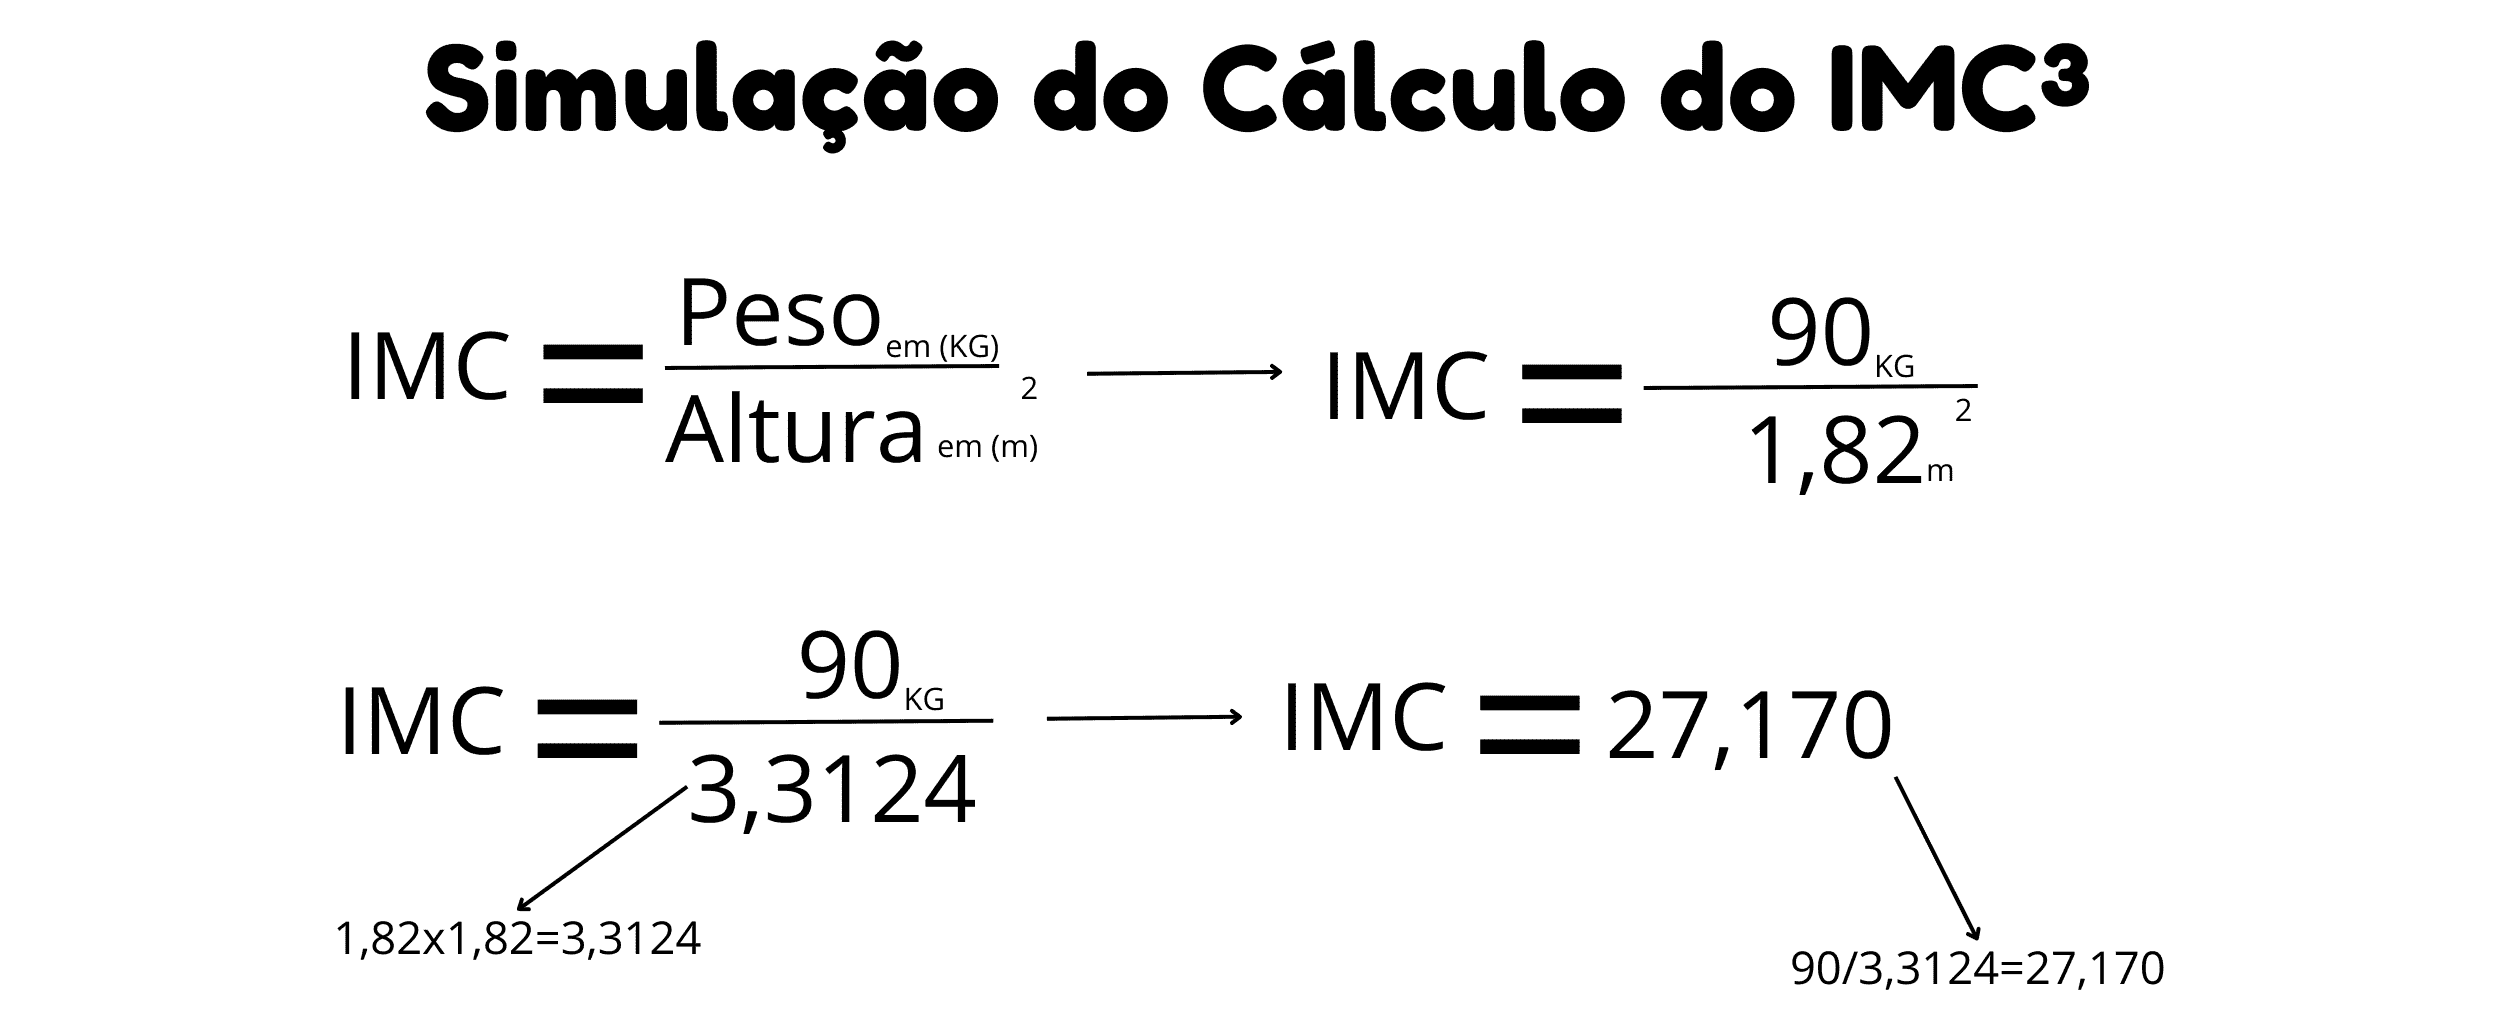 Simulação do cálculo do IMC